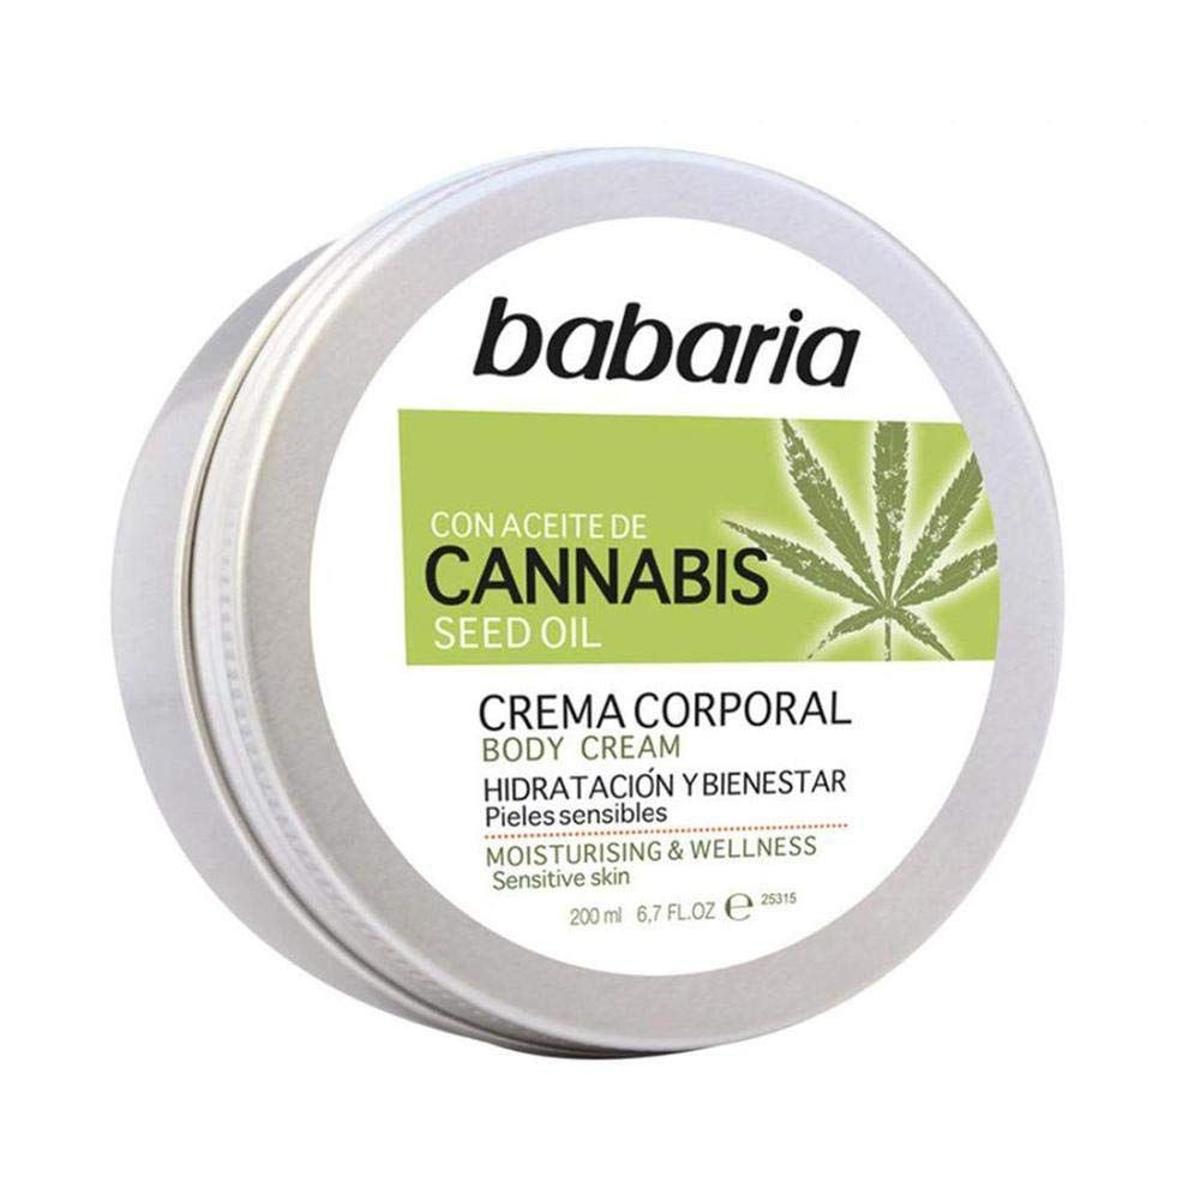 Crema corporal con aceite de cannabis de Babaria